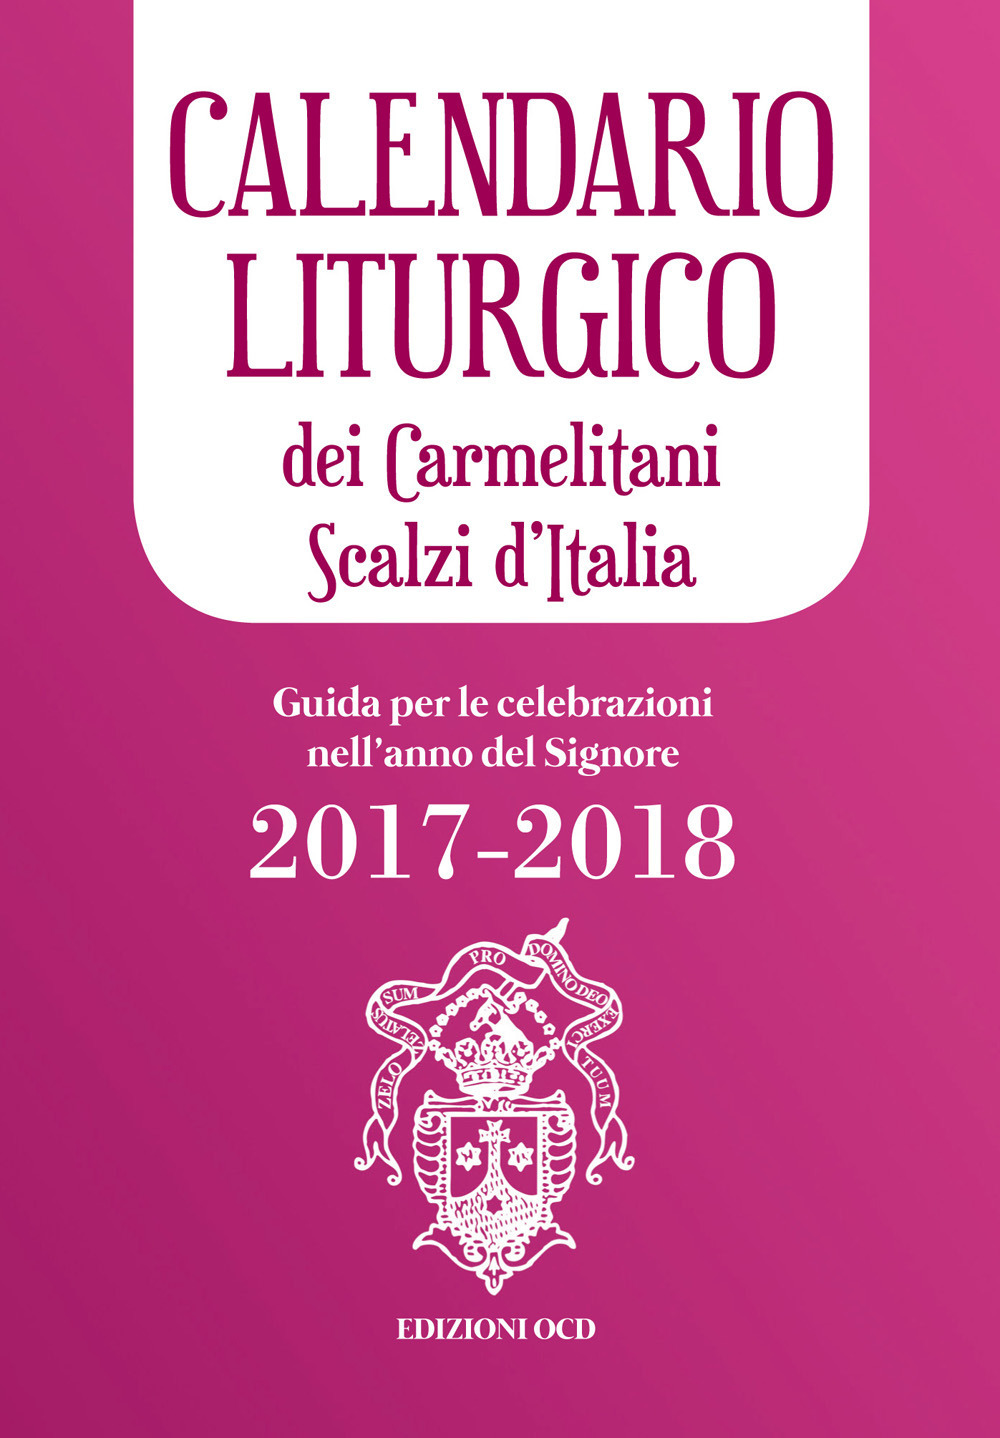 Calendario liturgico dei Carmelitani Scalzi d'Italia. Guida per le celebrazioni nell'anno del Signore 2017-2018